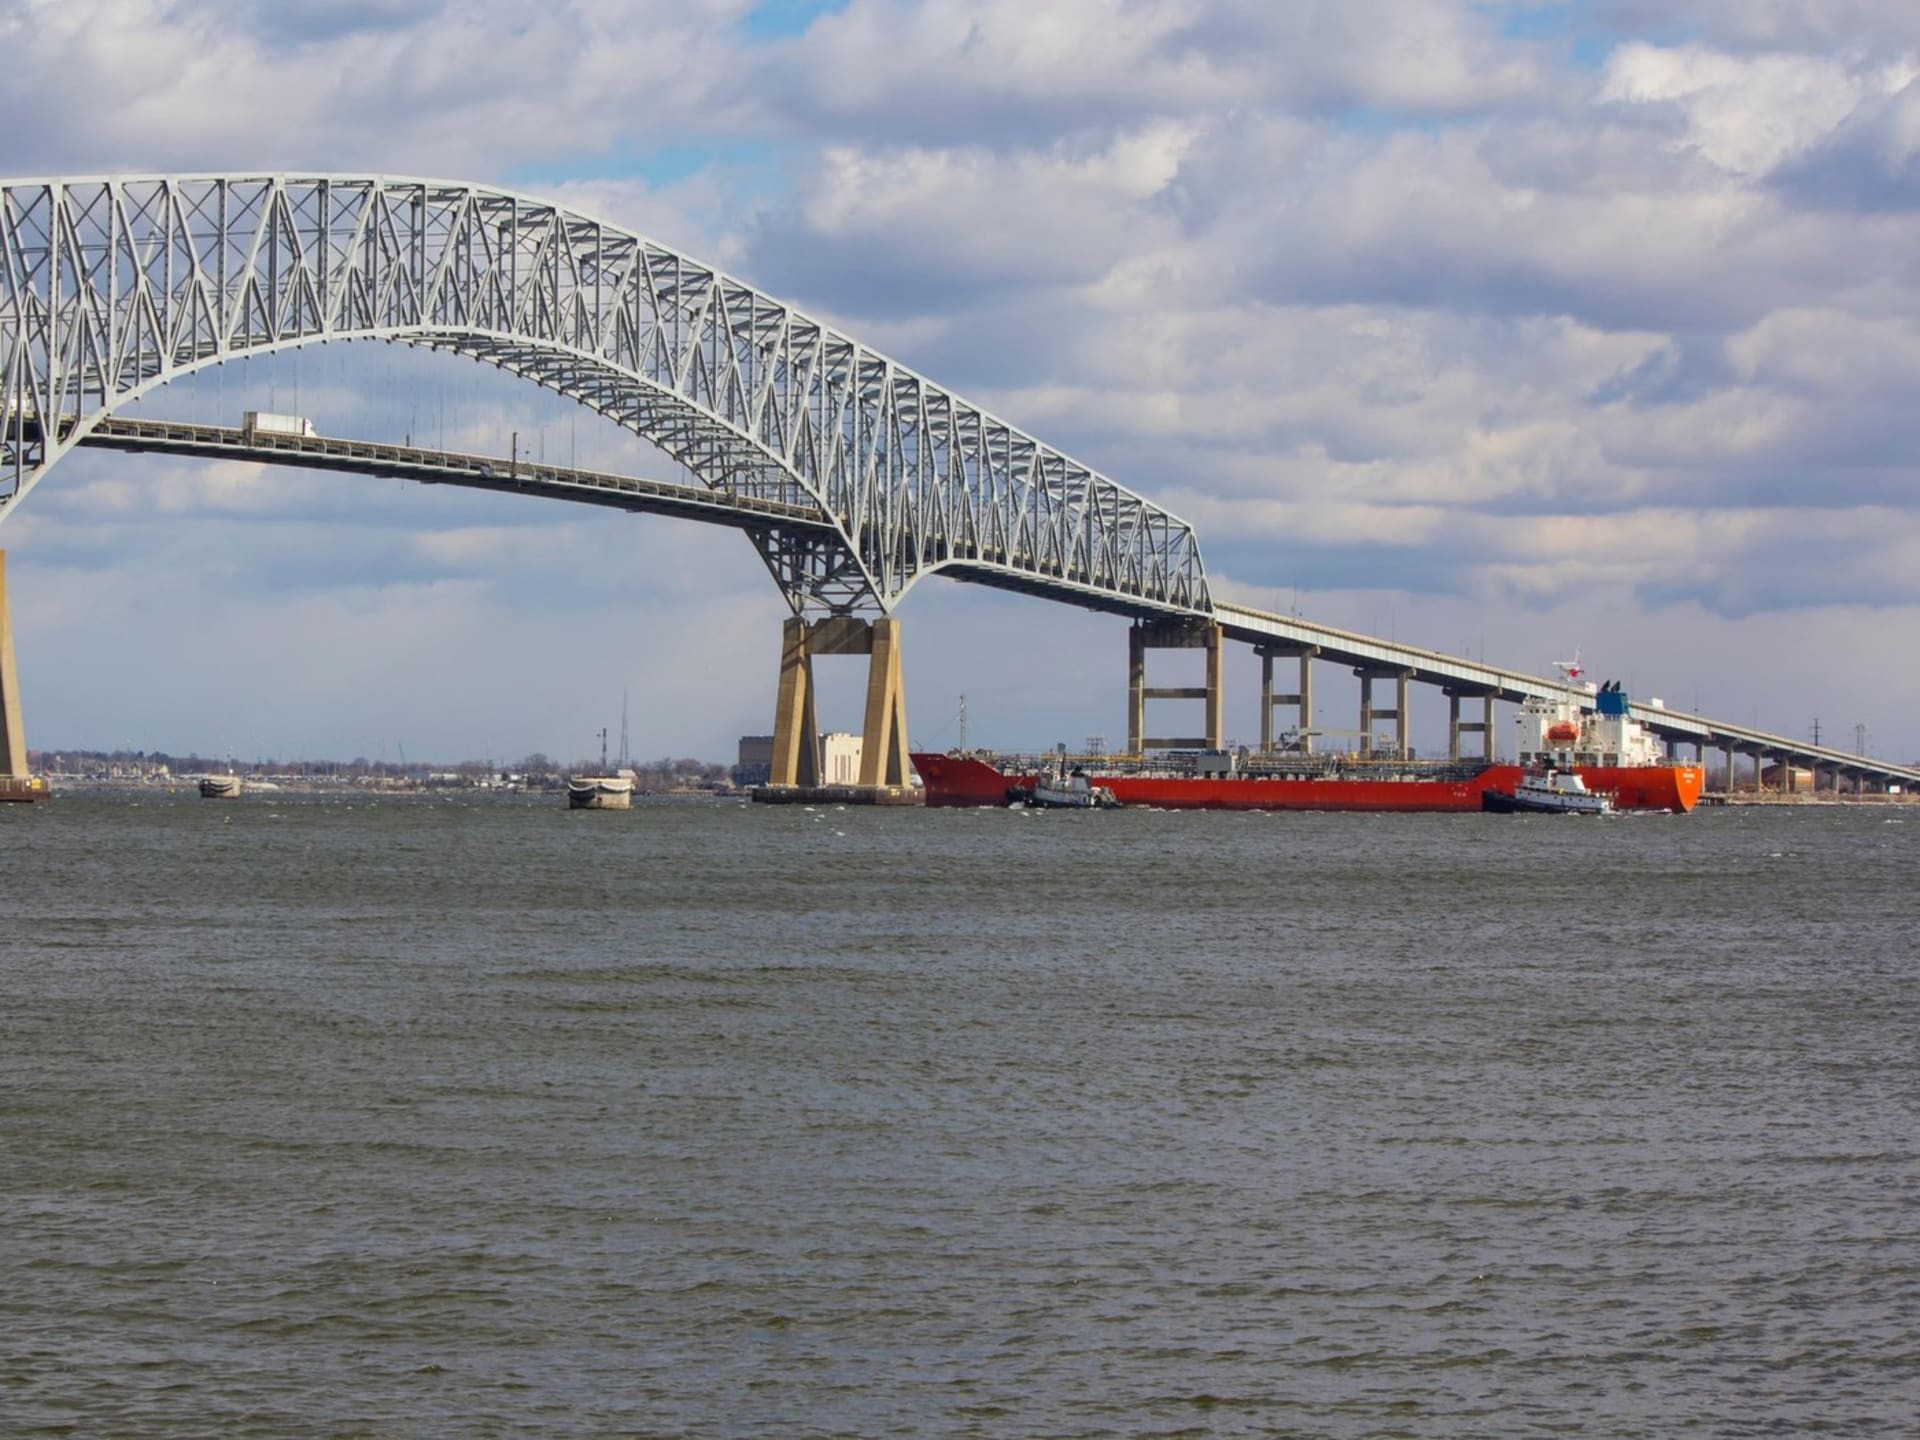 V Baltimoru se zřítil čtyřproudový silniční most.